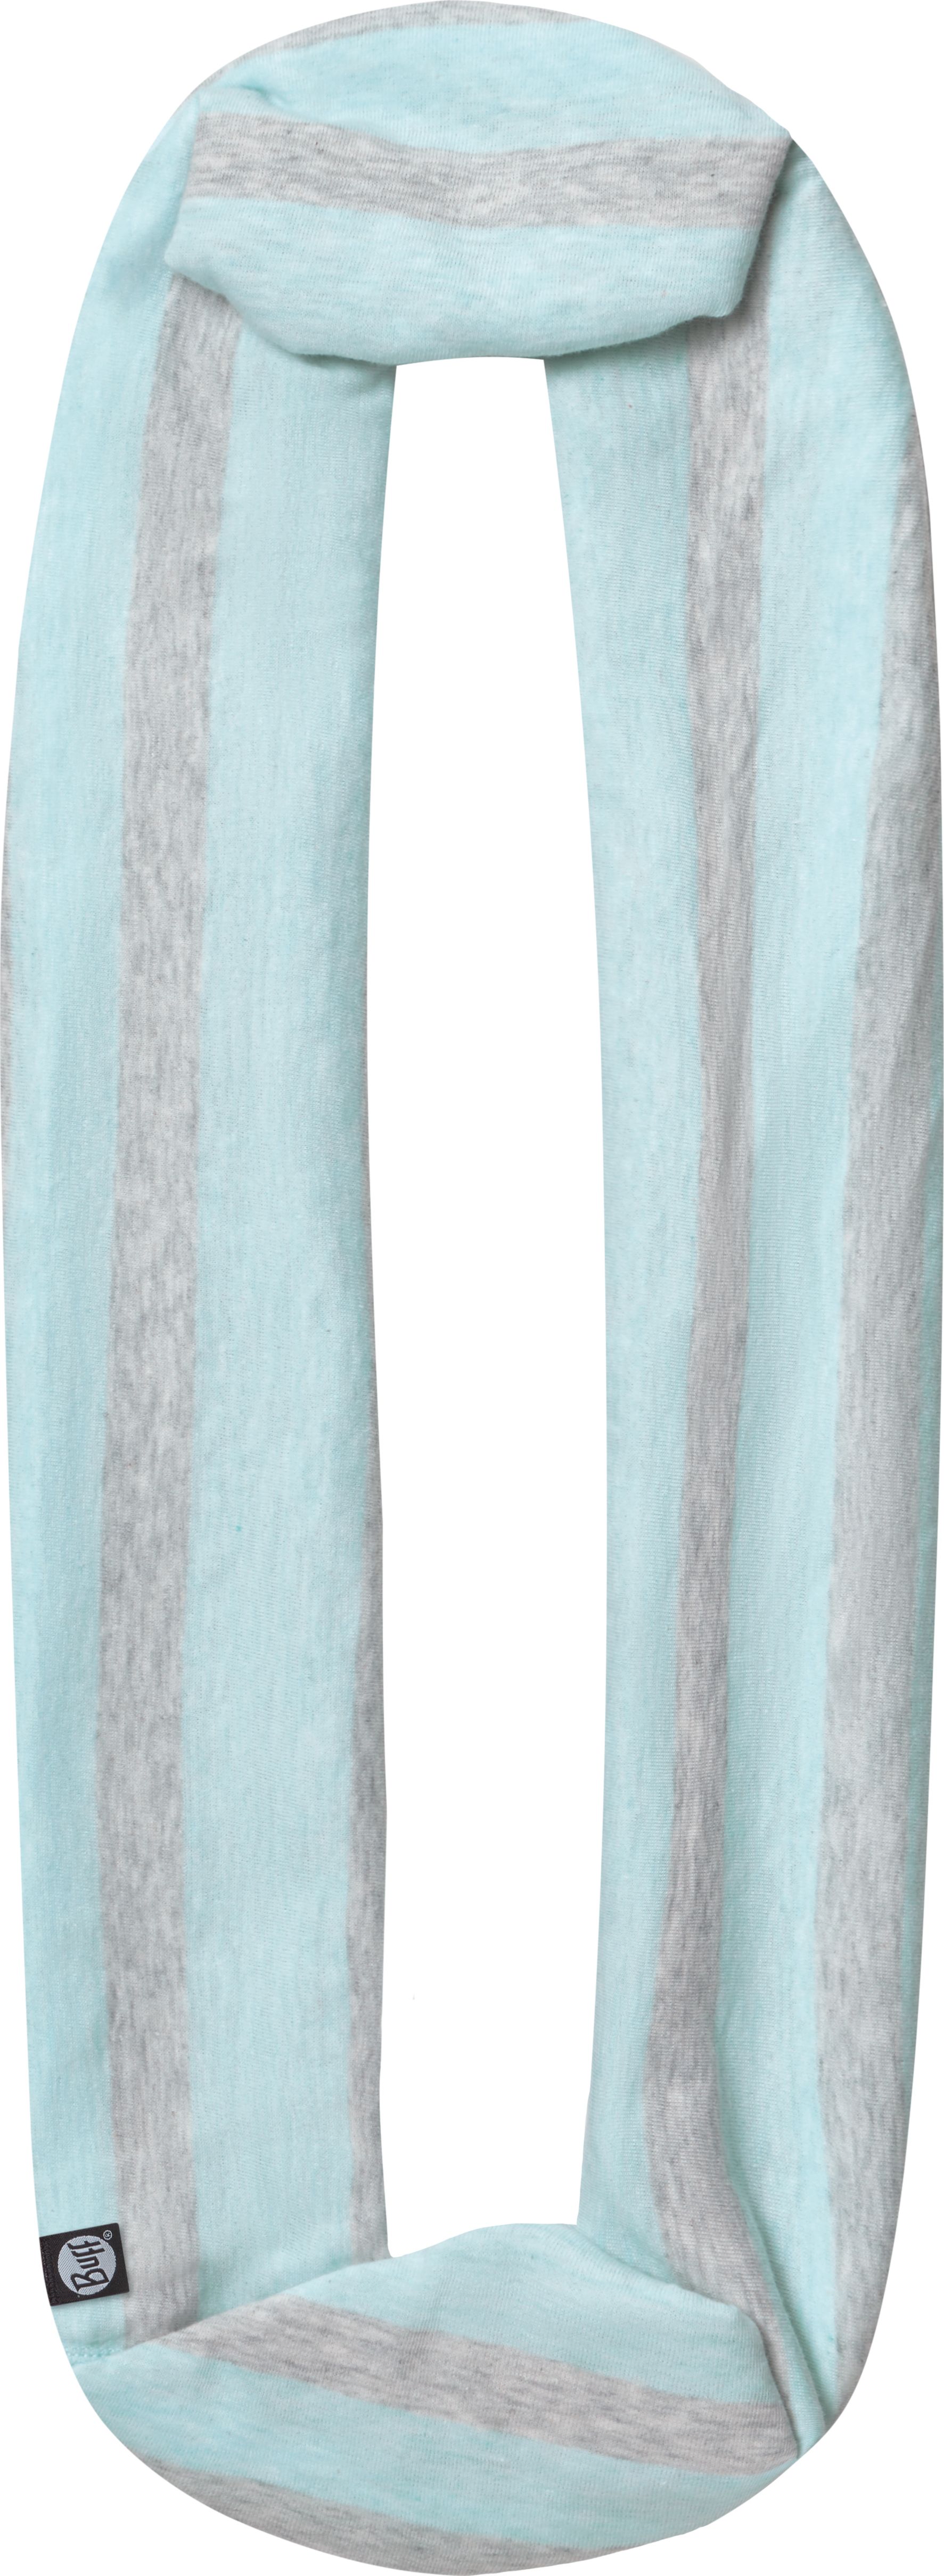 Шарф Buff Cotton Infinity Aqua Stripes, цвет: голубой. 115015.711.10.00. Размер универсальный